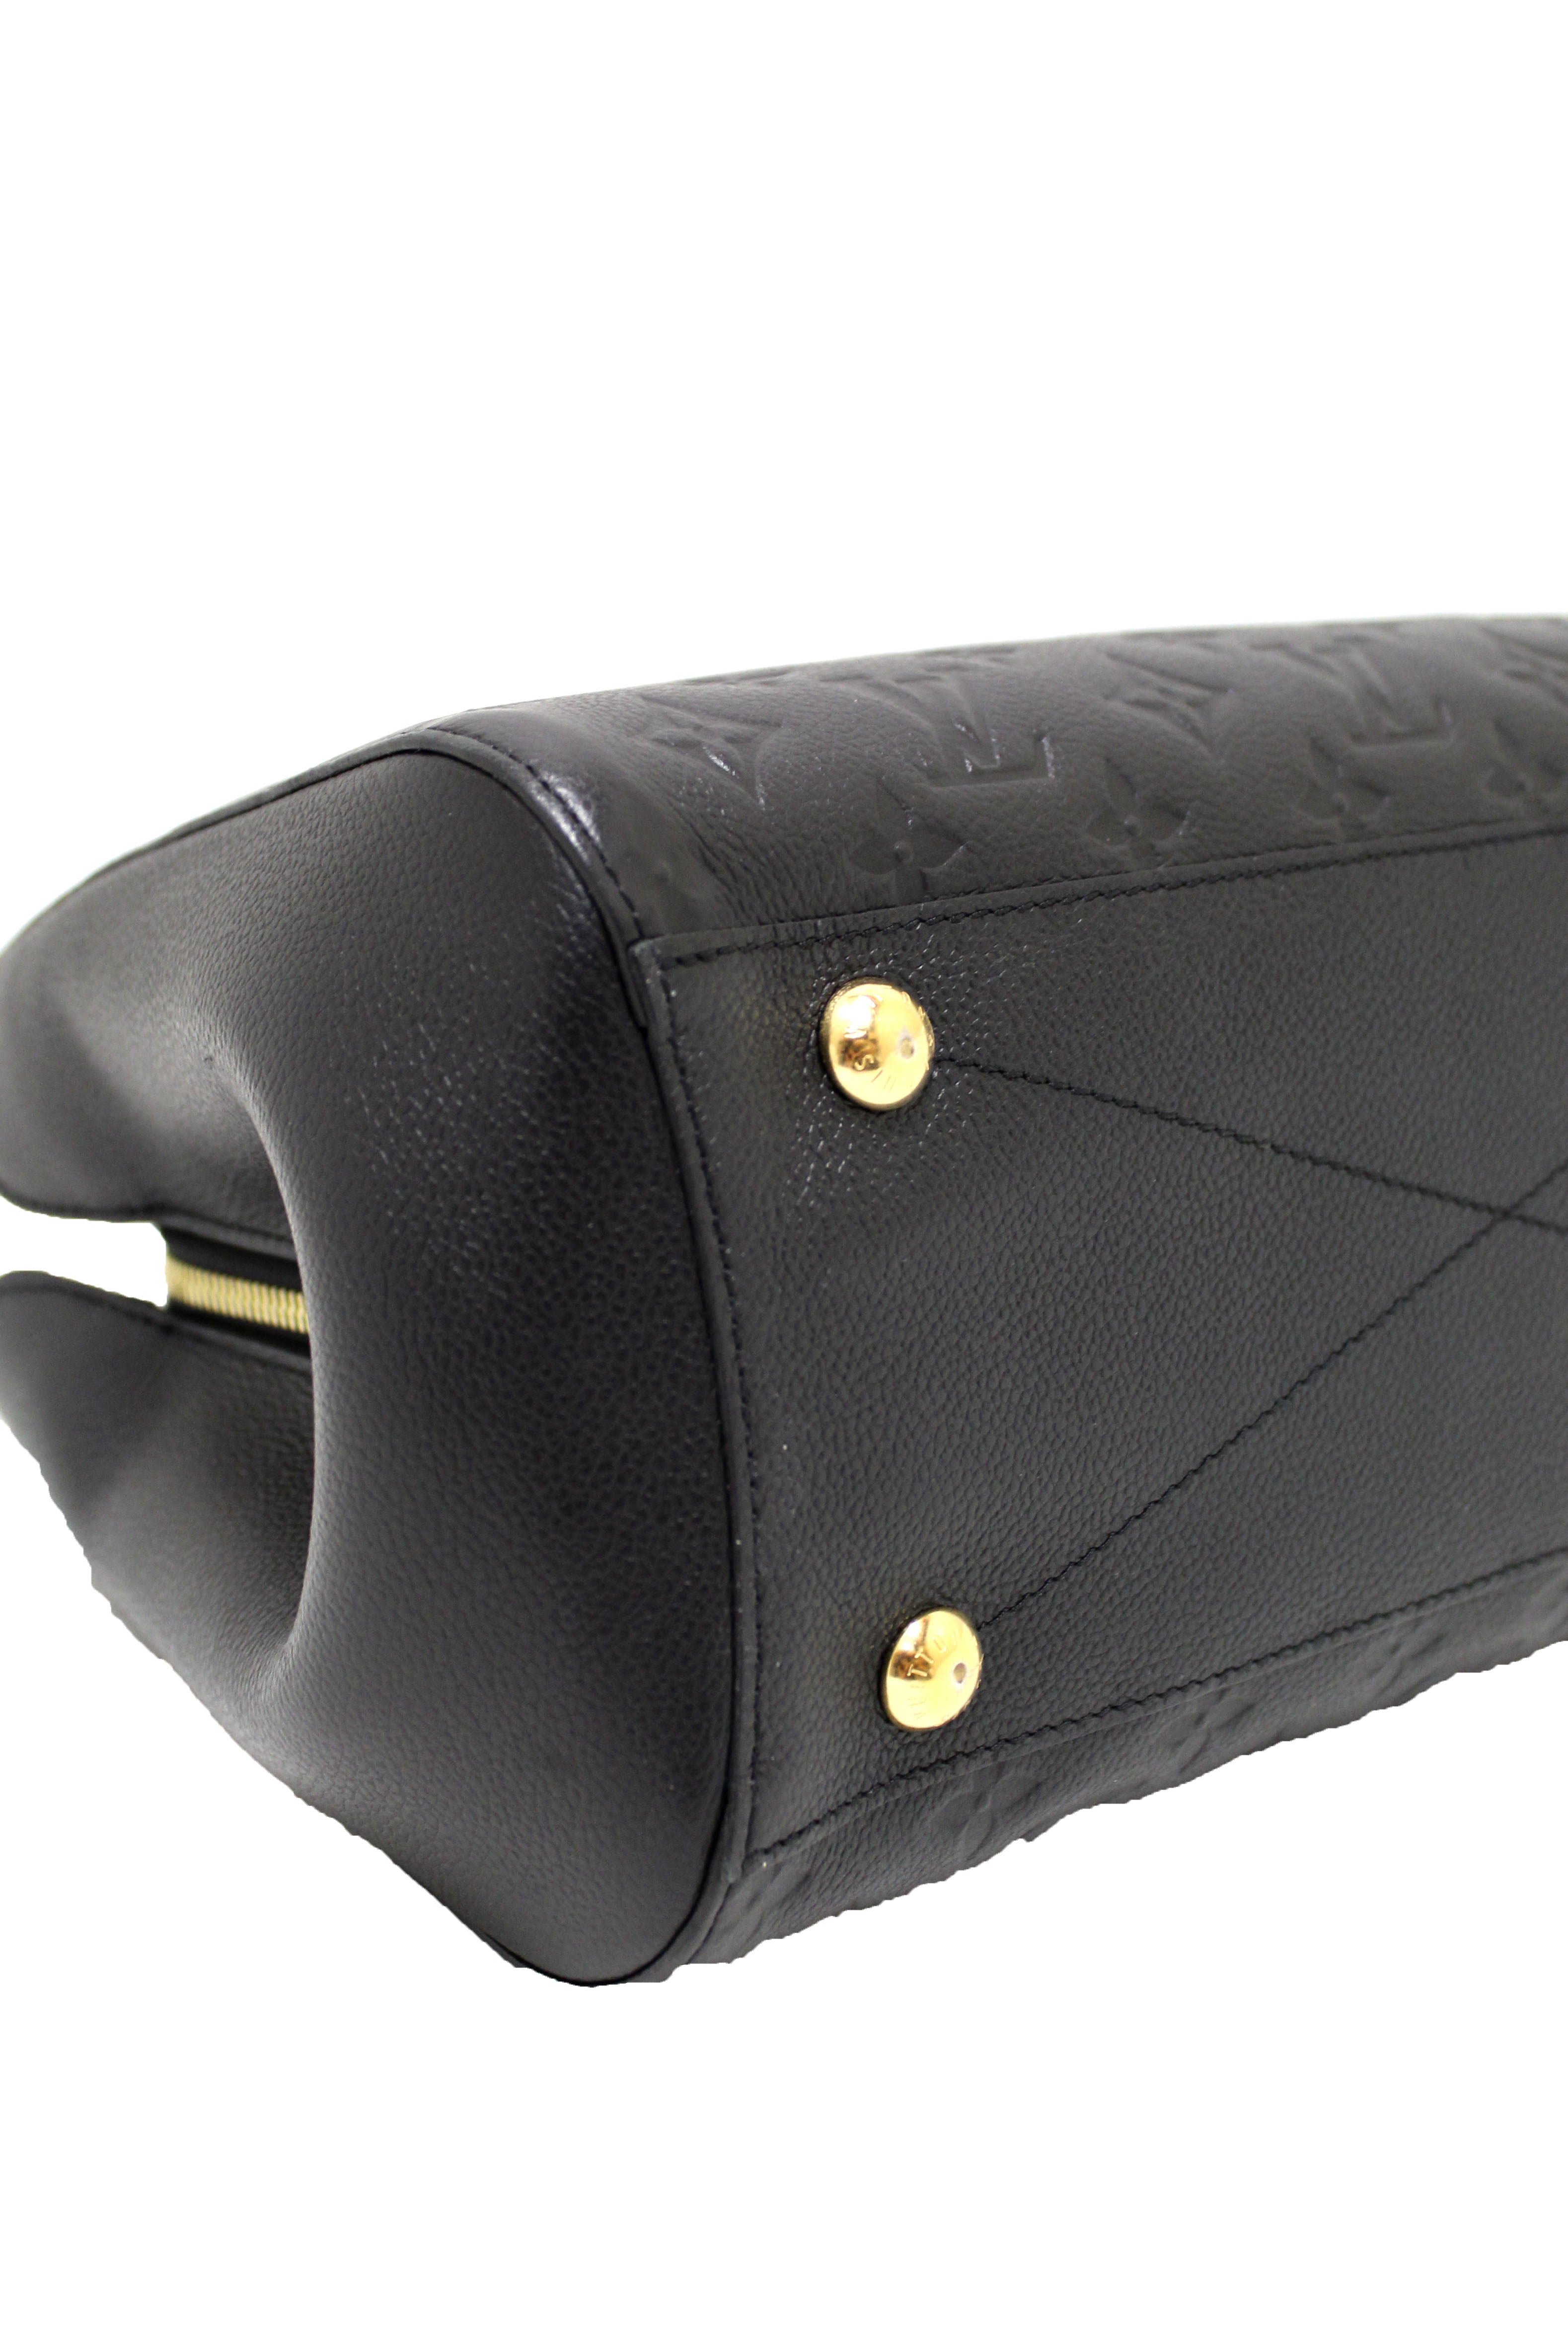 LOUIS VUITTON Montaigne GM Empreinte Leather Shoulder Bag Black